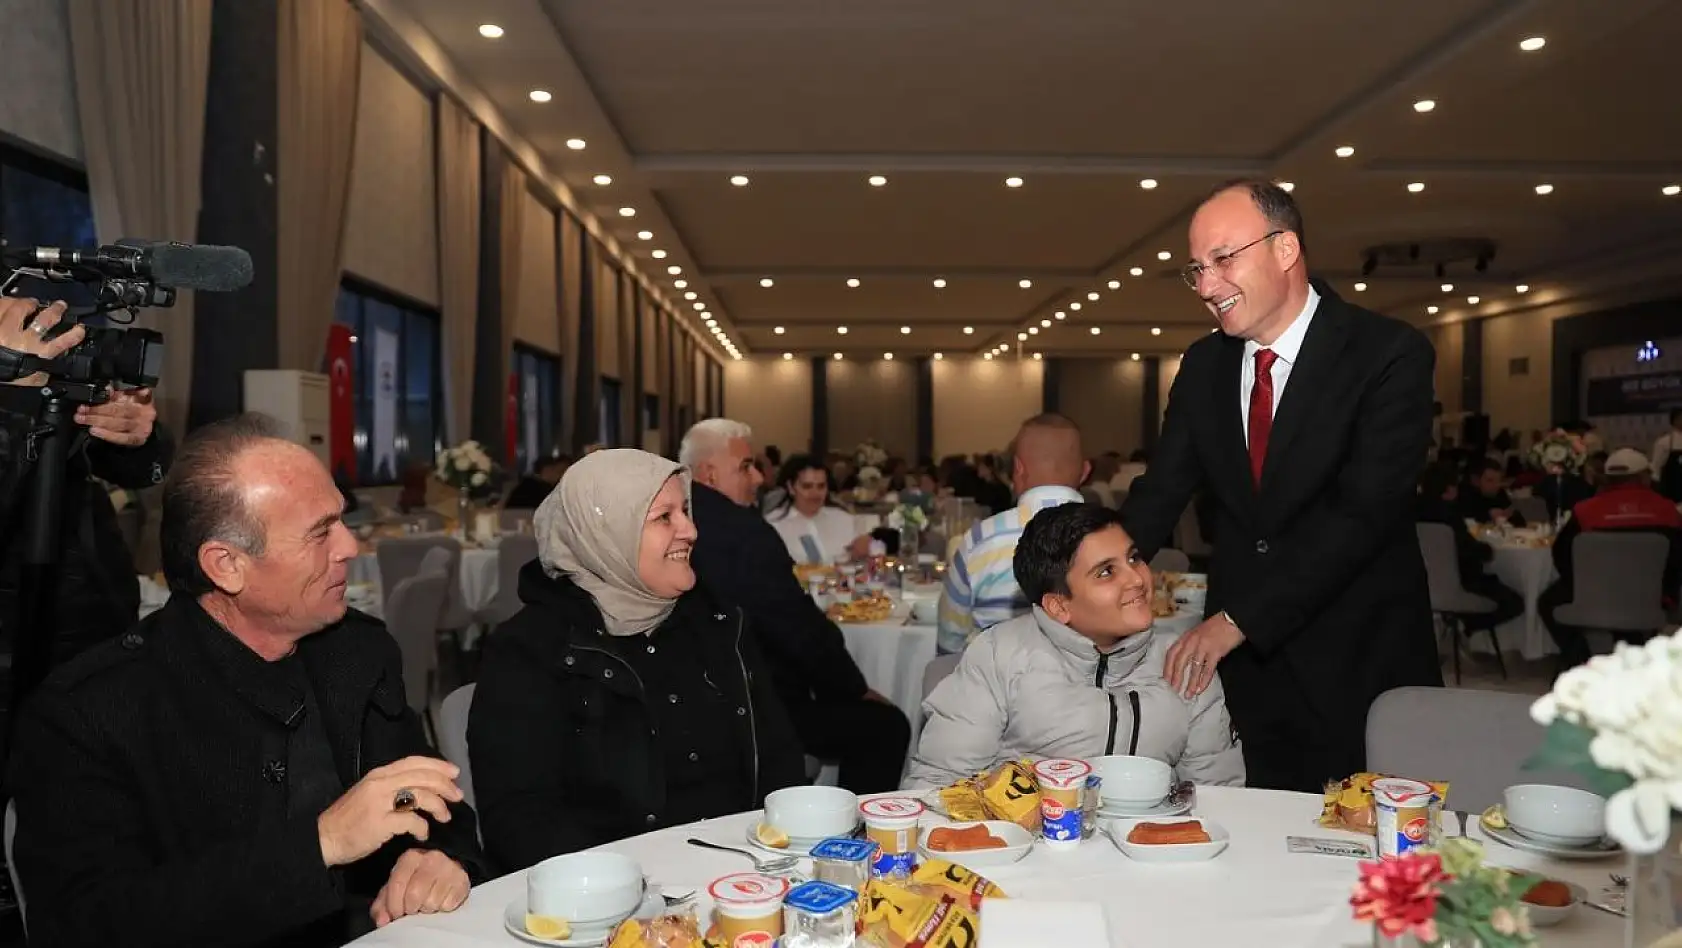 Başkan Örki'den veda yemeği